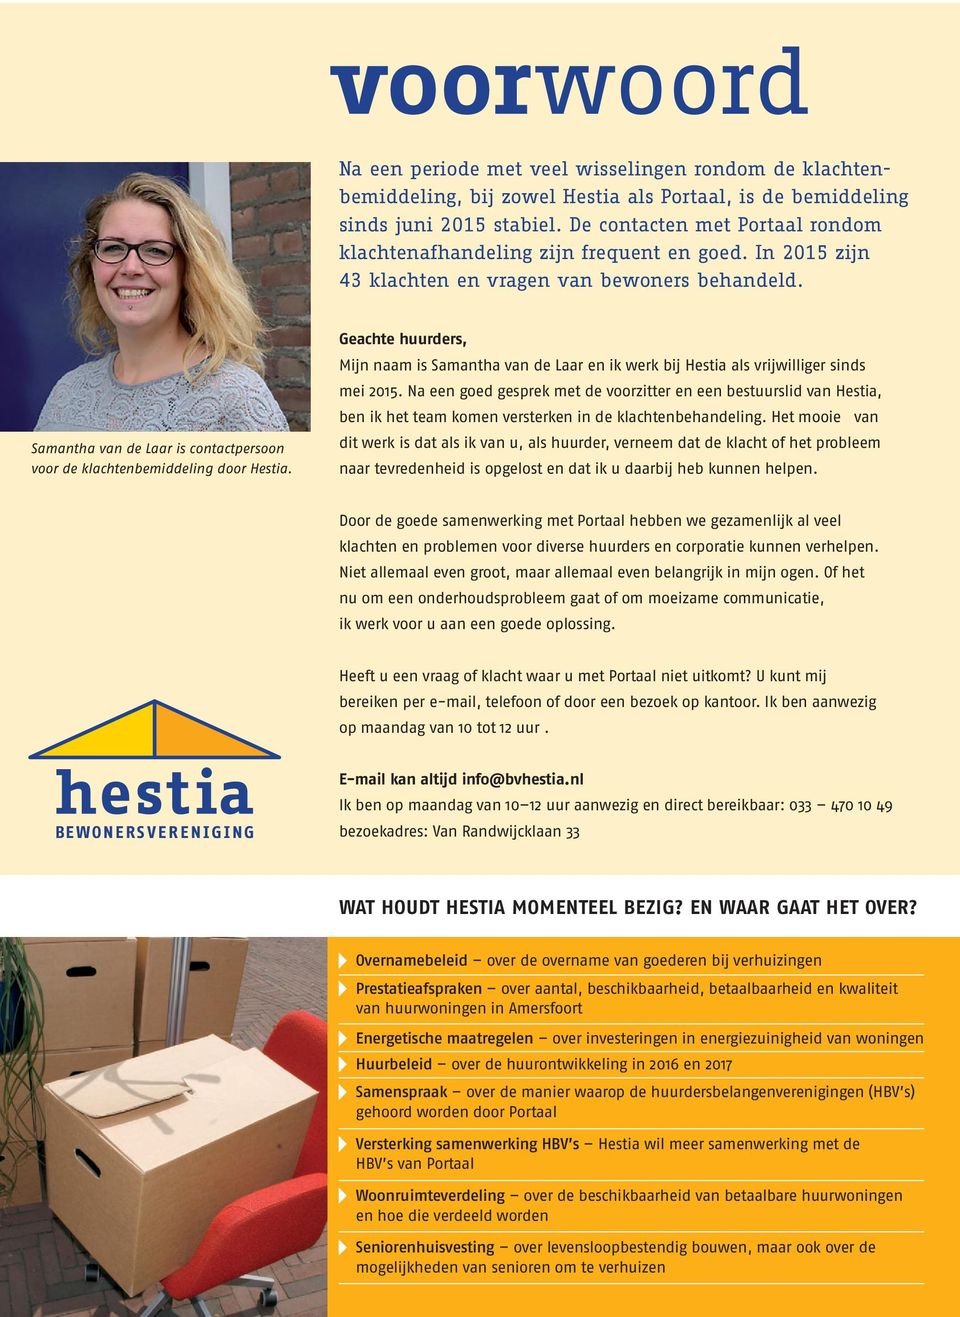 Samantha van de Laar is contactpersoon voor de klachtenbemiddeling door Hestia. Geachte huurders, Mijn naam is Samantha van de Laar en ik werk bij Hestia als vrijwilliger sinds mei 2015.